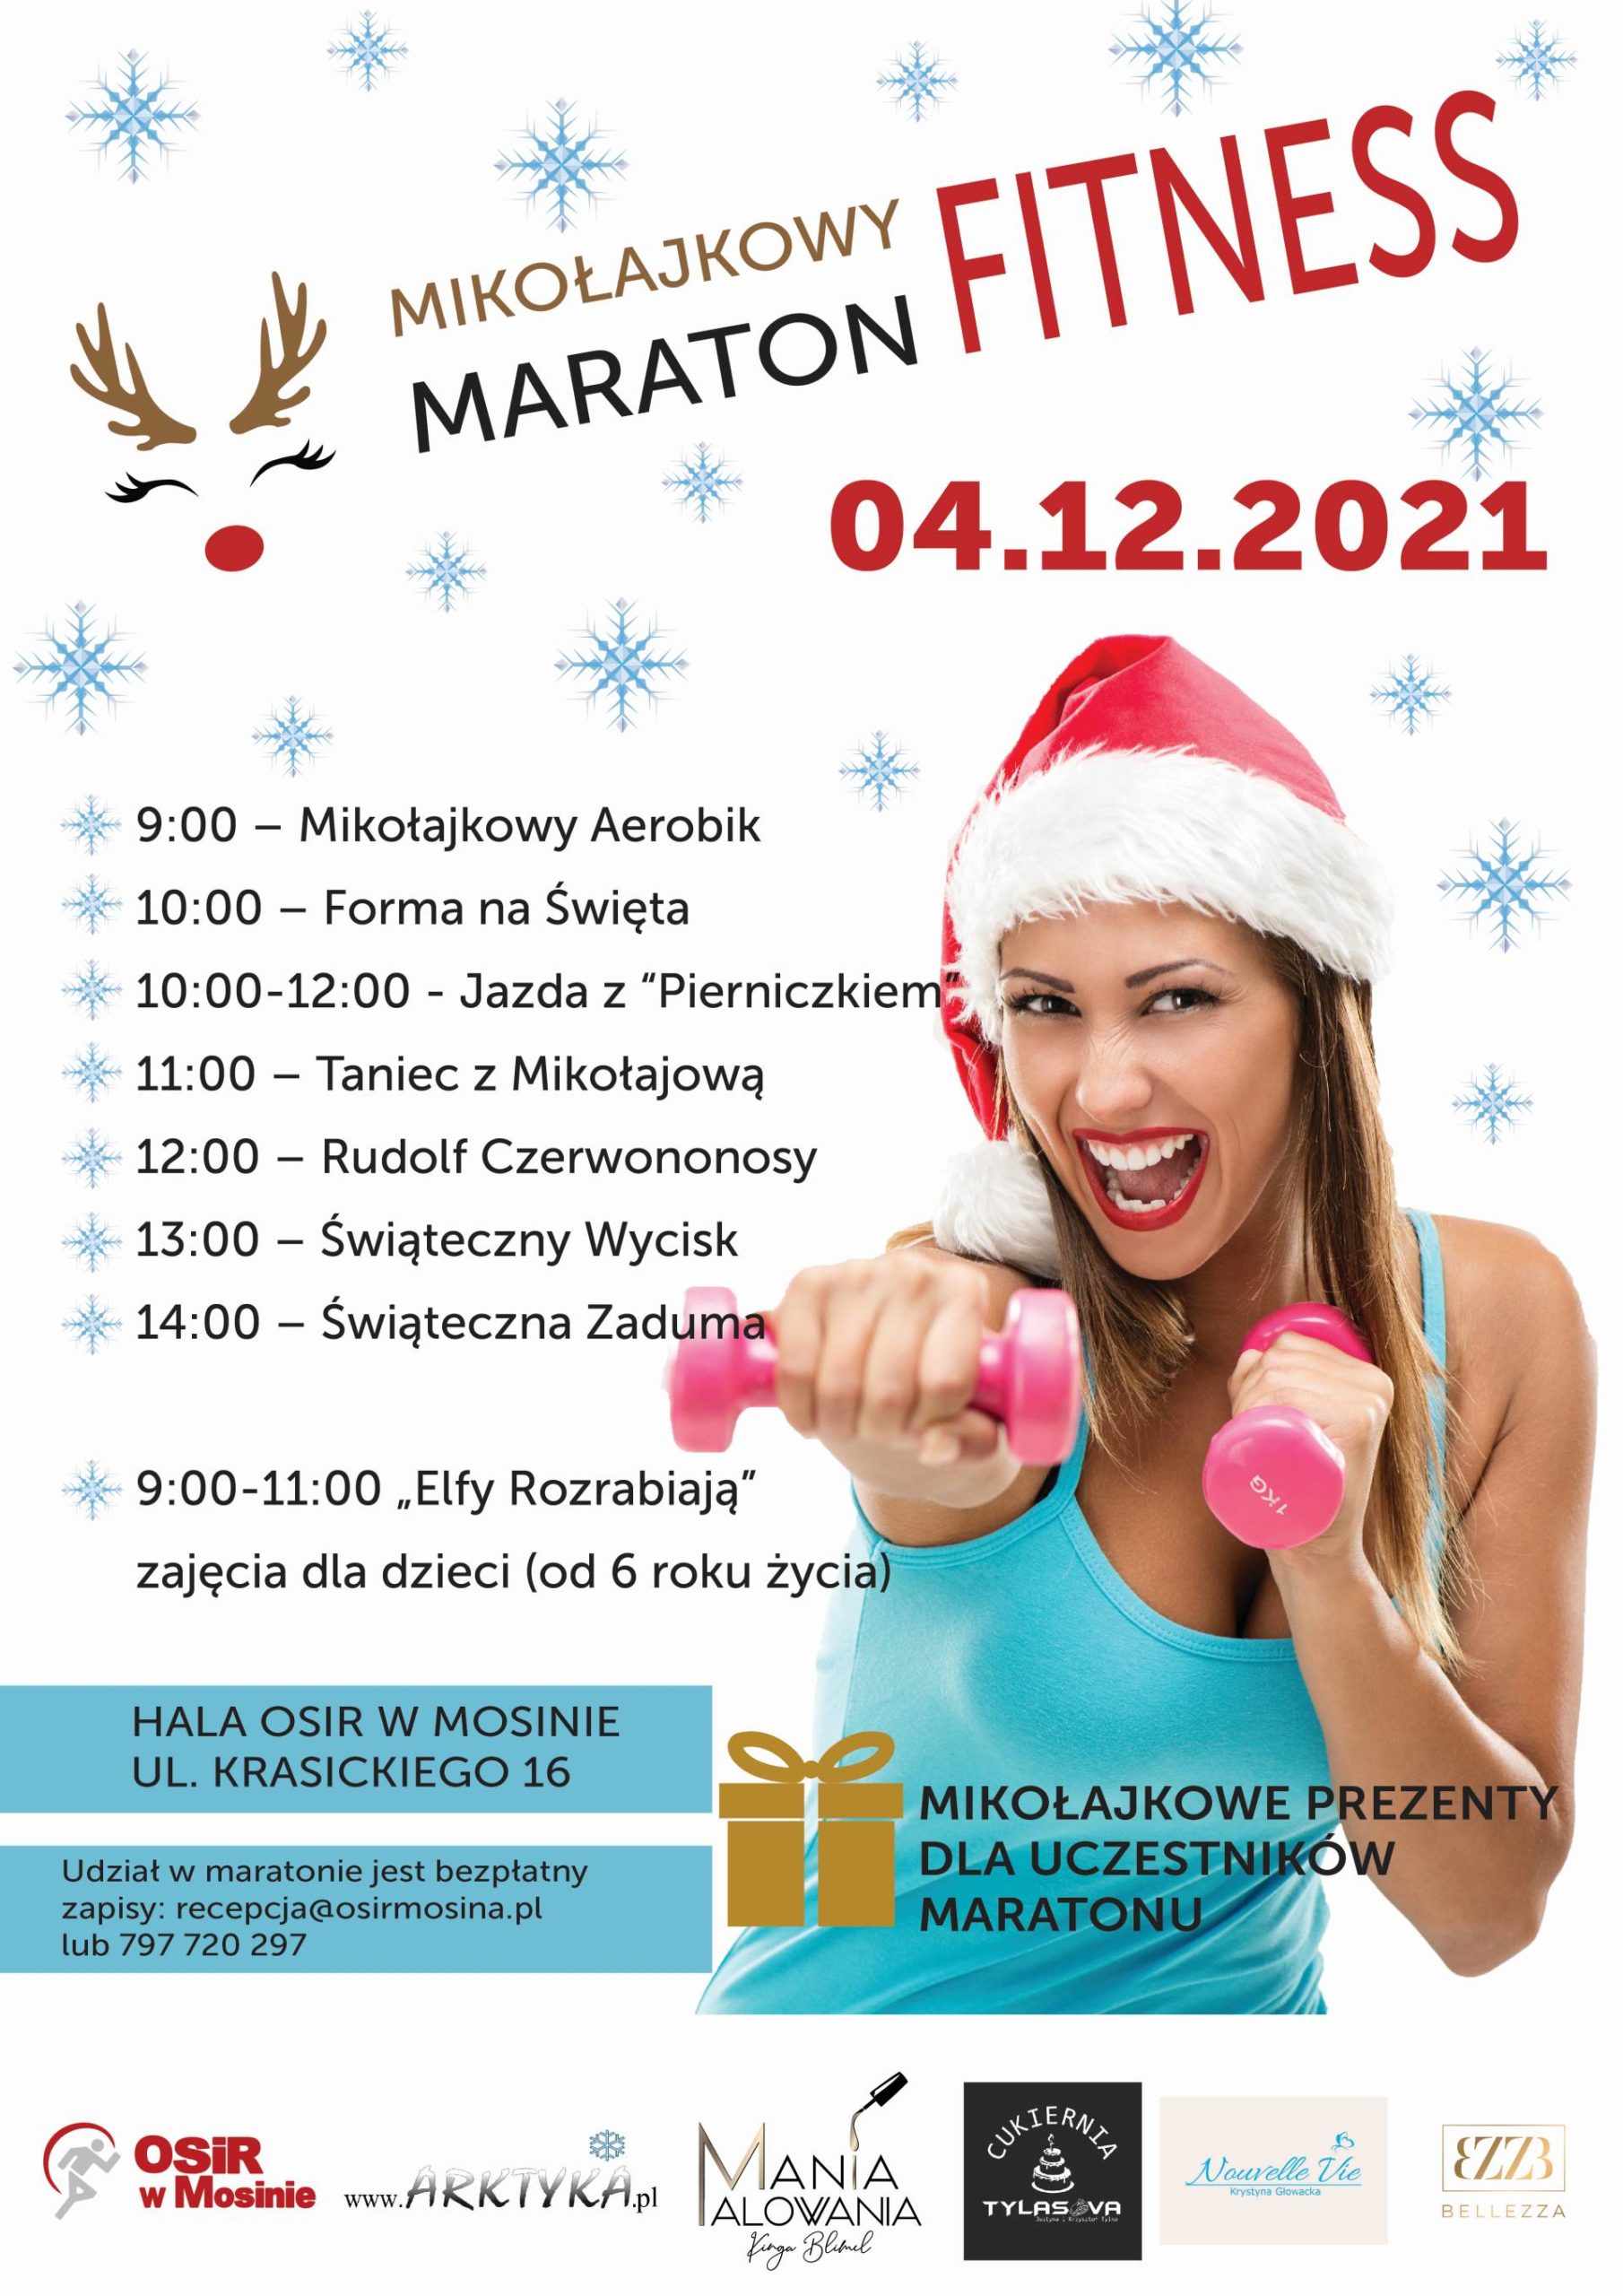 Informacje dotyczące Mikołajkowego Maratonu Fitness, który odbędzie się 4 grudnia 2021 roku